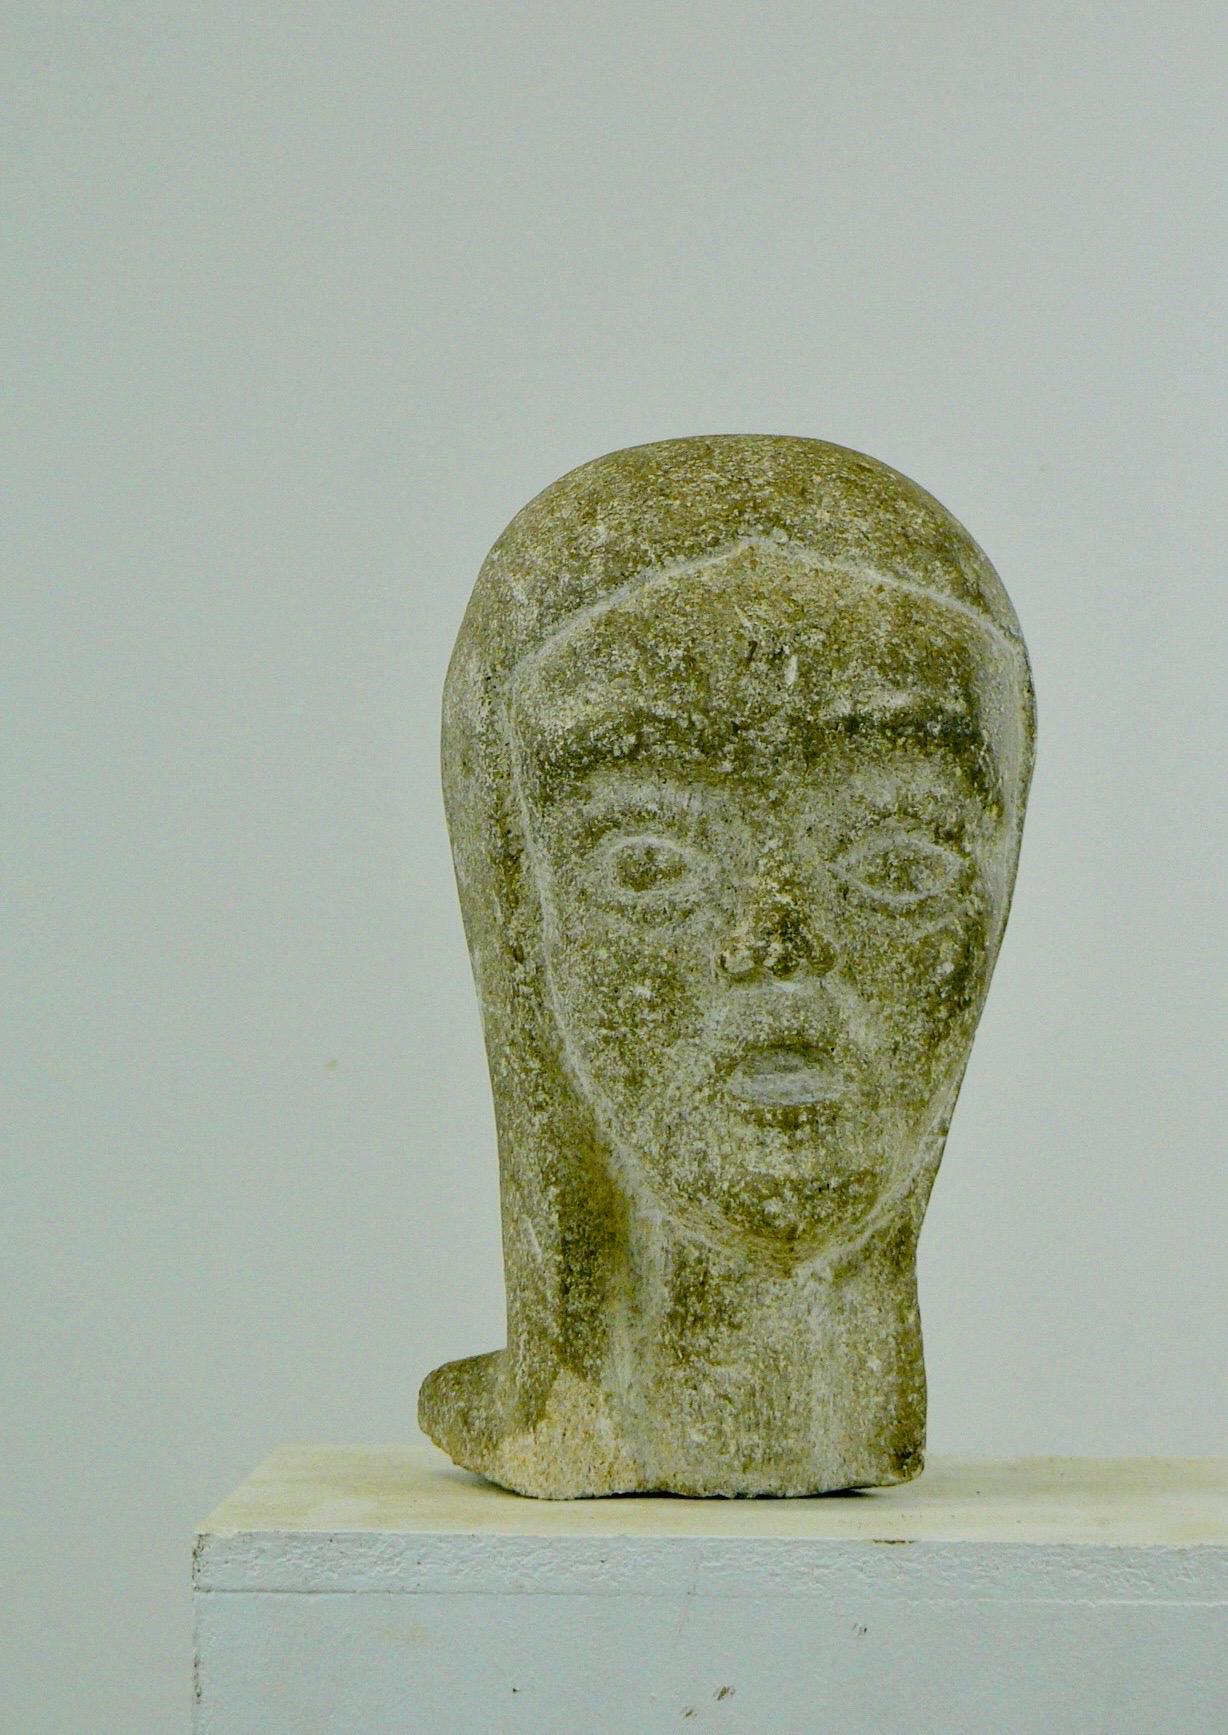 Eine raffinierte Granitskulptur, die den Kopf einer jungen Frau darstellt, von der man annimmt, dass sie die Heilige Johanna von Orléans repräsentiert. Sie wurde in den 1950er Jahren in Frankreich hergestellt. Er weist eine wunderbare Patina auf,